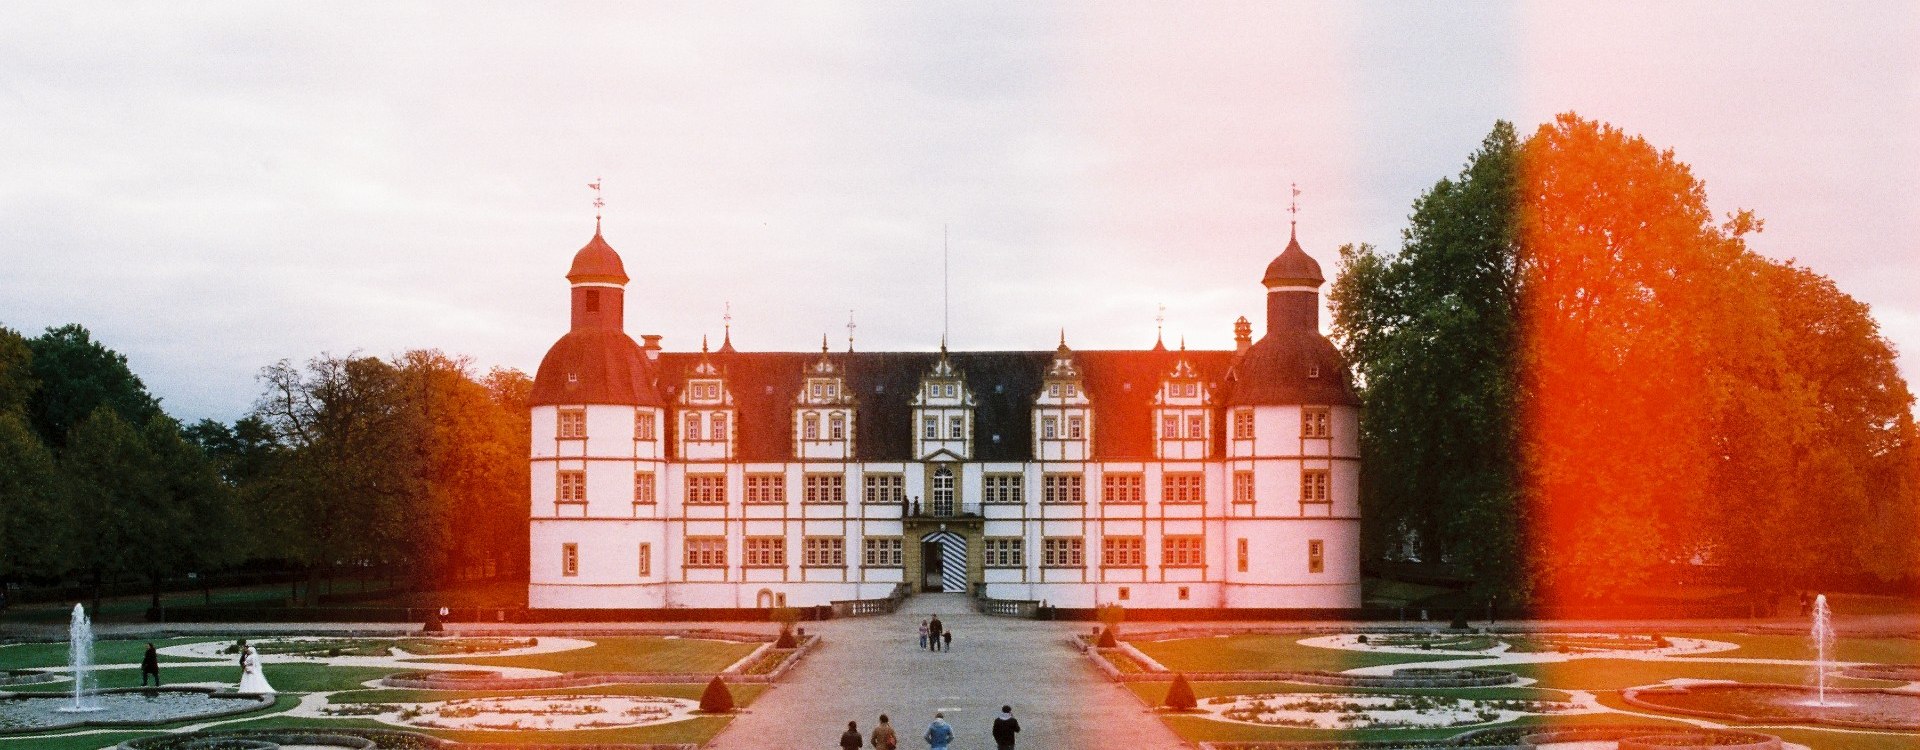 Schloss- und Auenpark Neuhaus, © Johannes Höhn